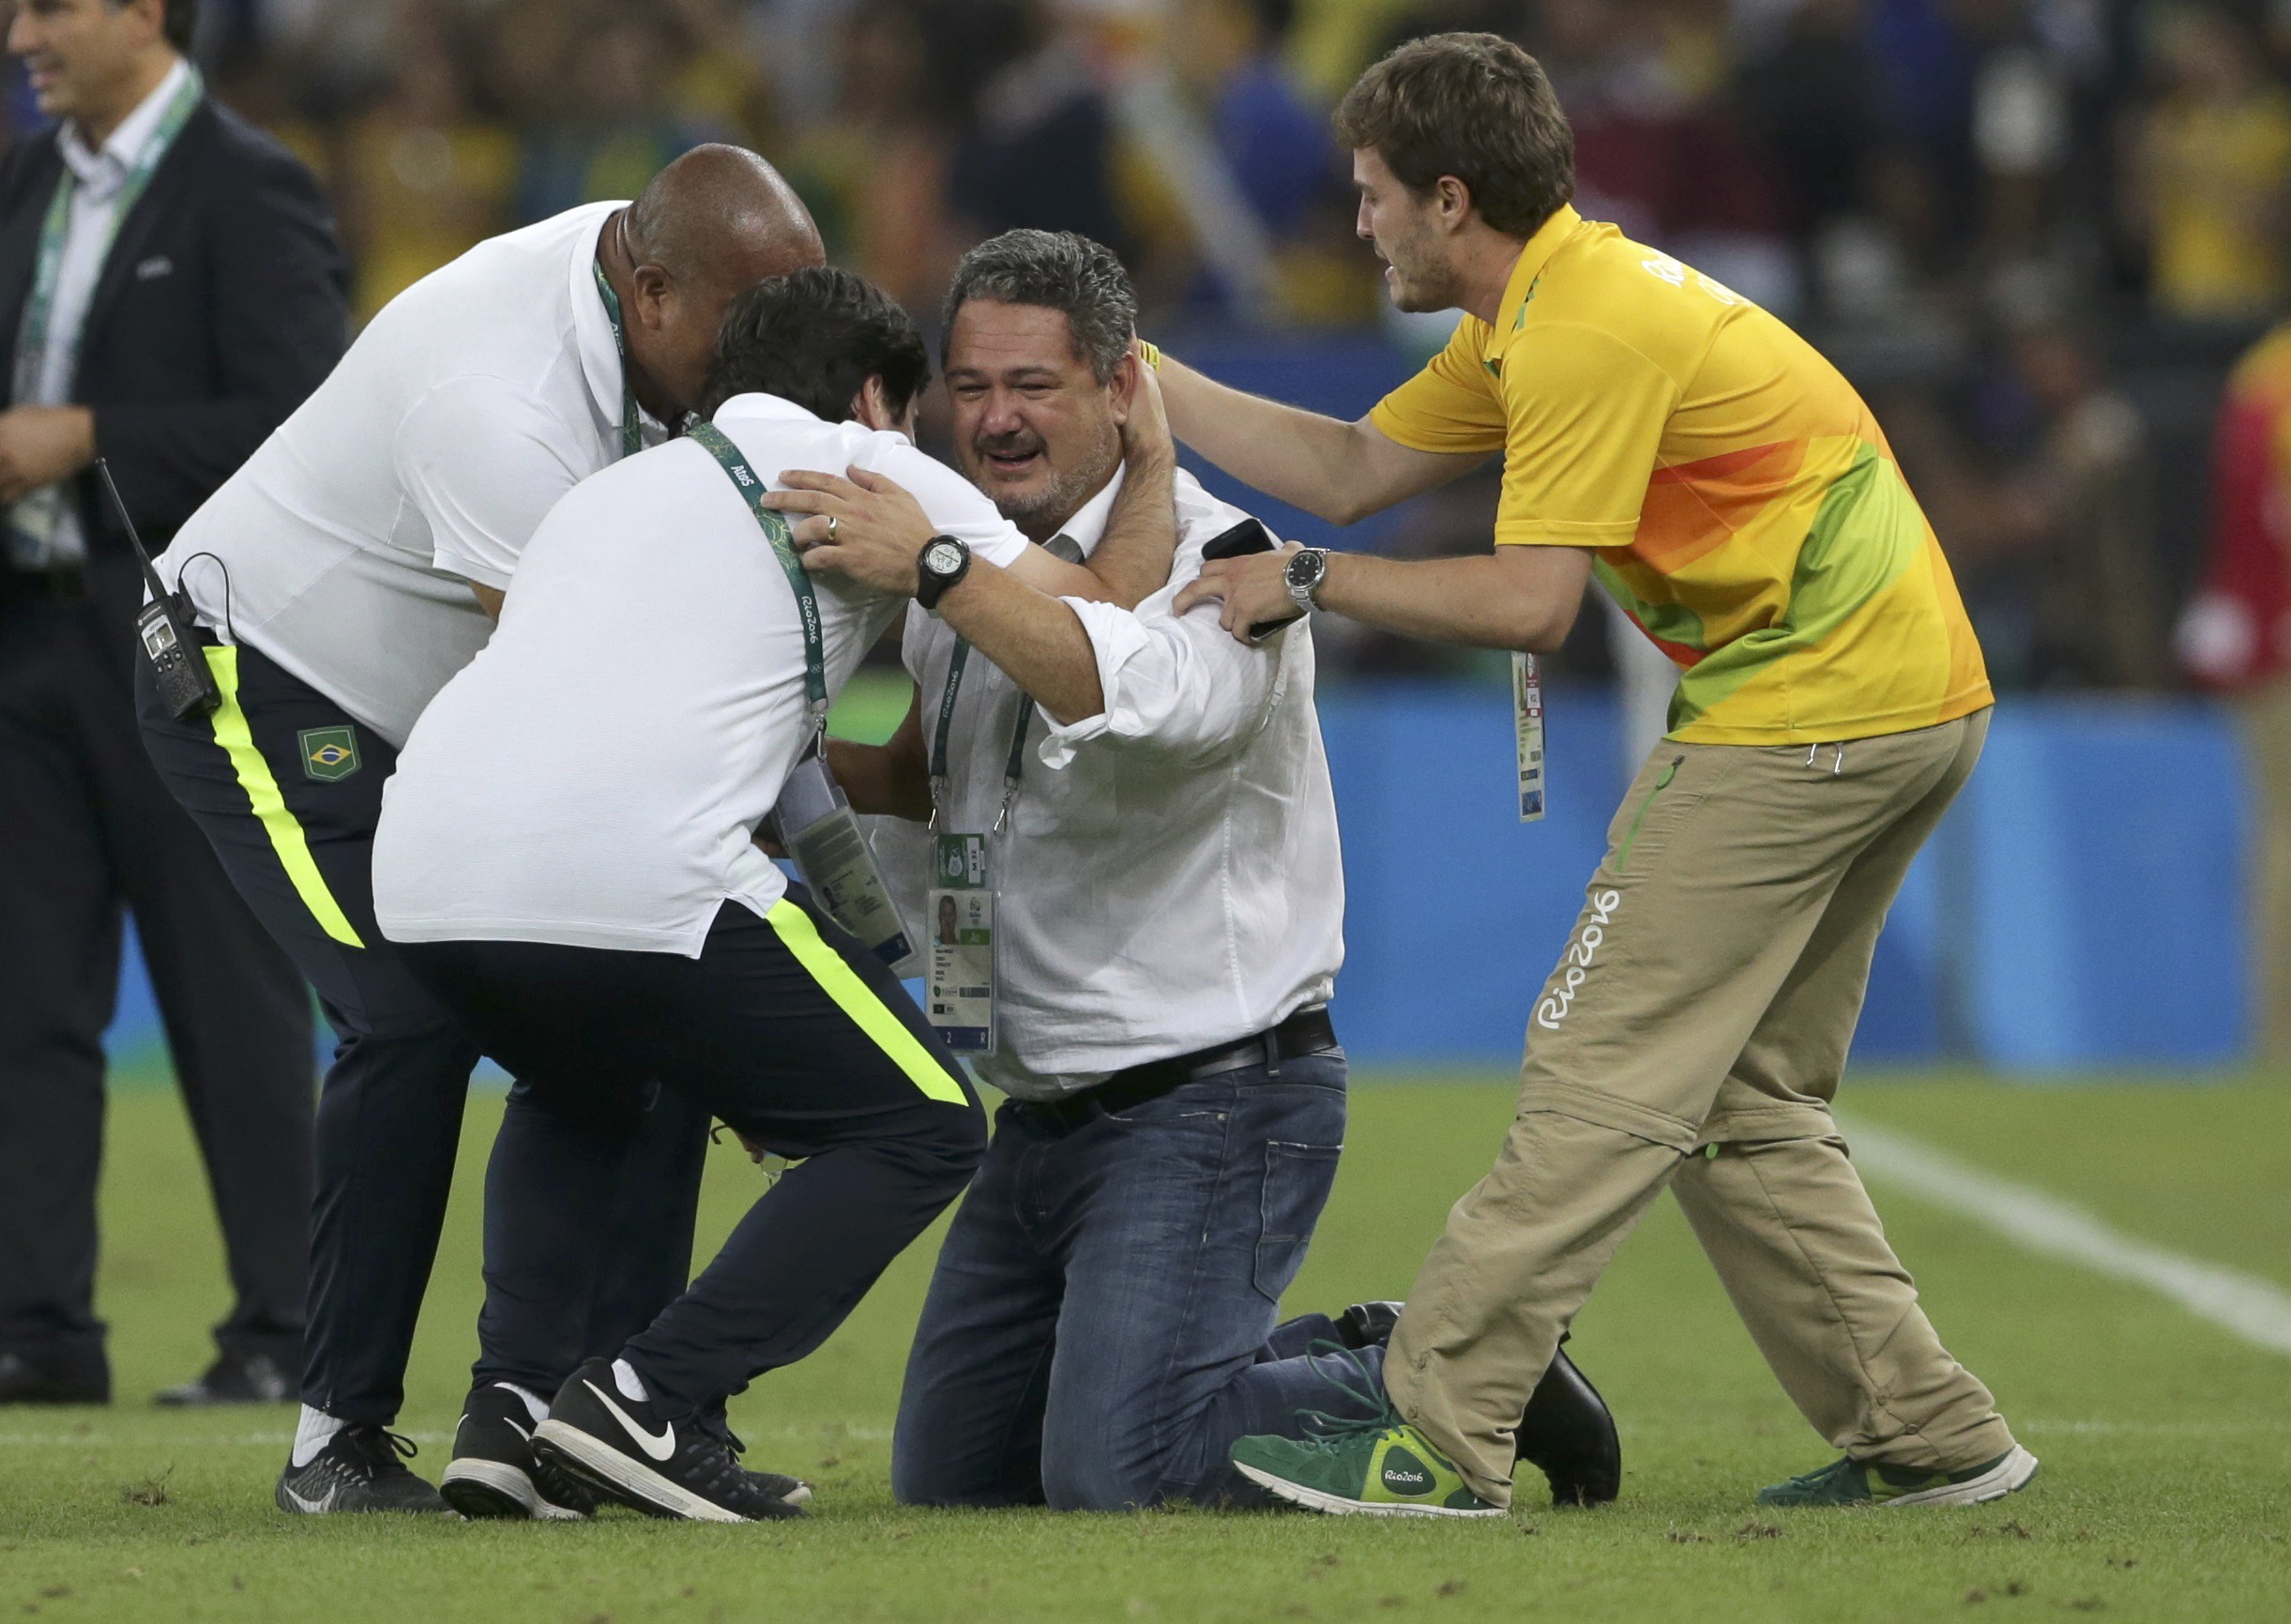 HLV Rogerio Micale bật khóc sau khi đội Olympic giành chiến thắng trong trận chung kết. Ảnh: REUTERS